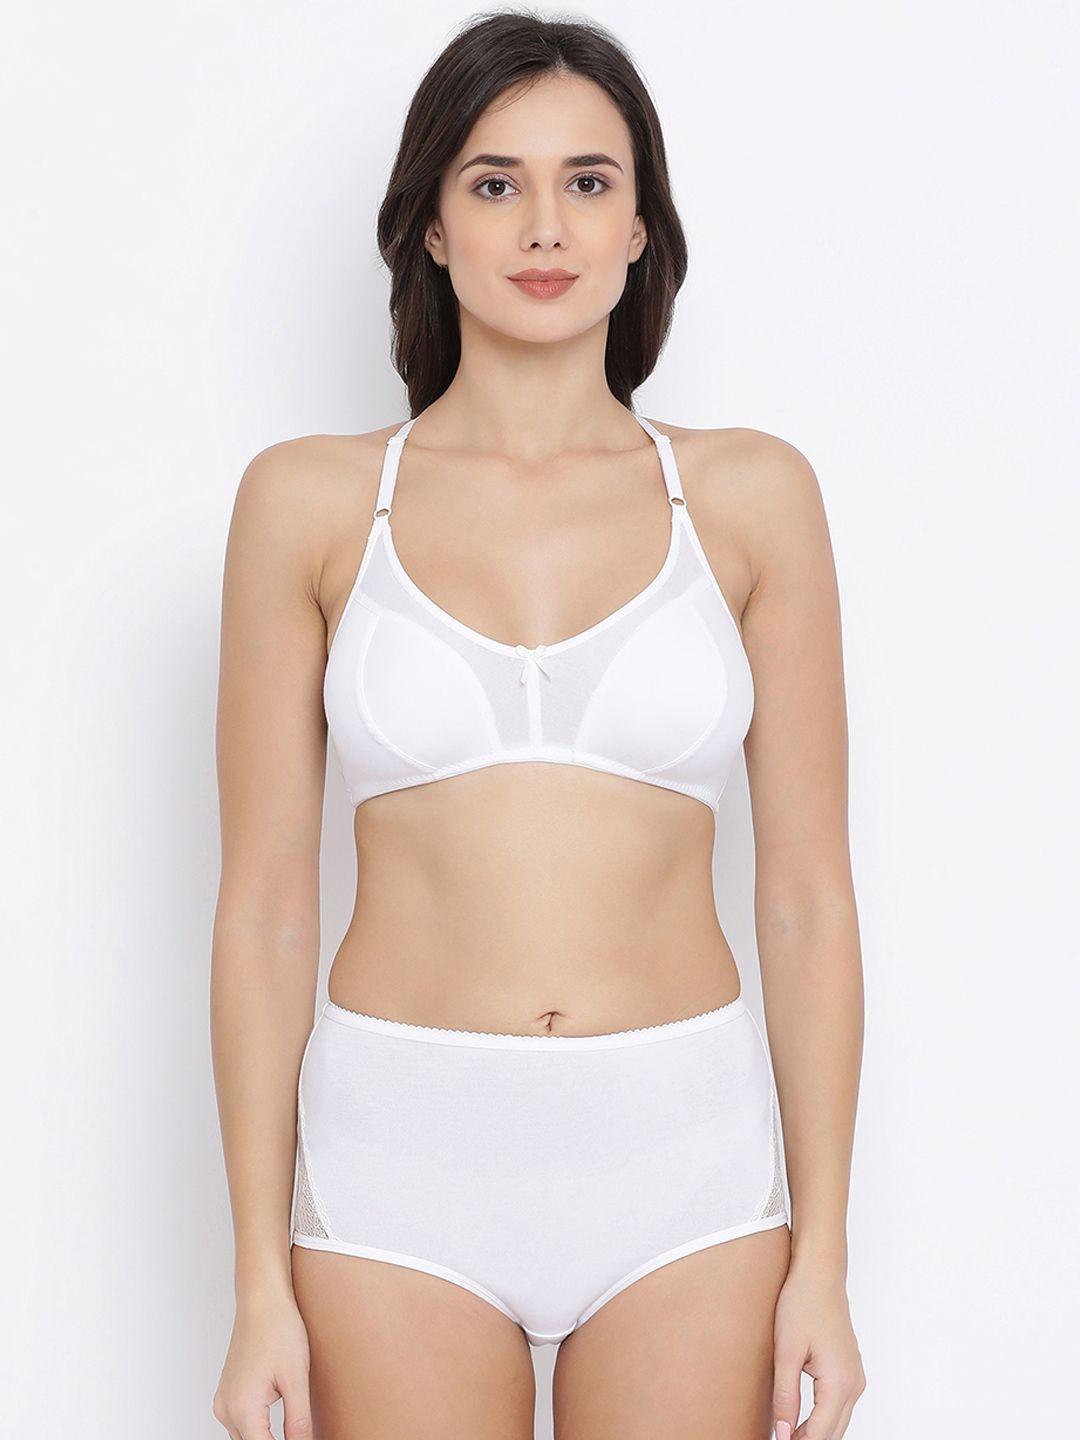 clovia women white solid lingerie set combbp99632b